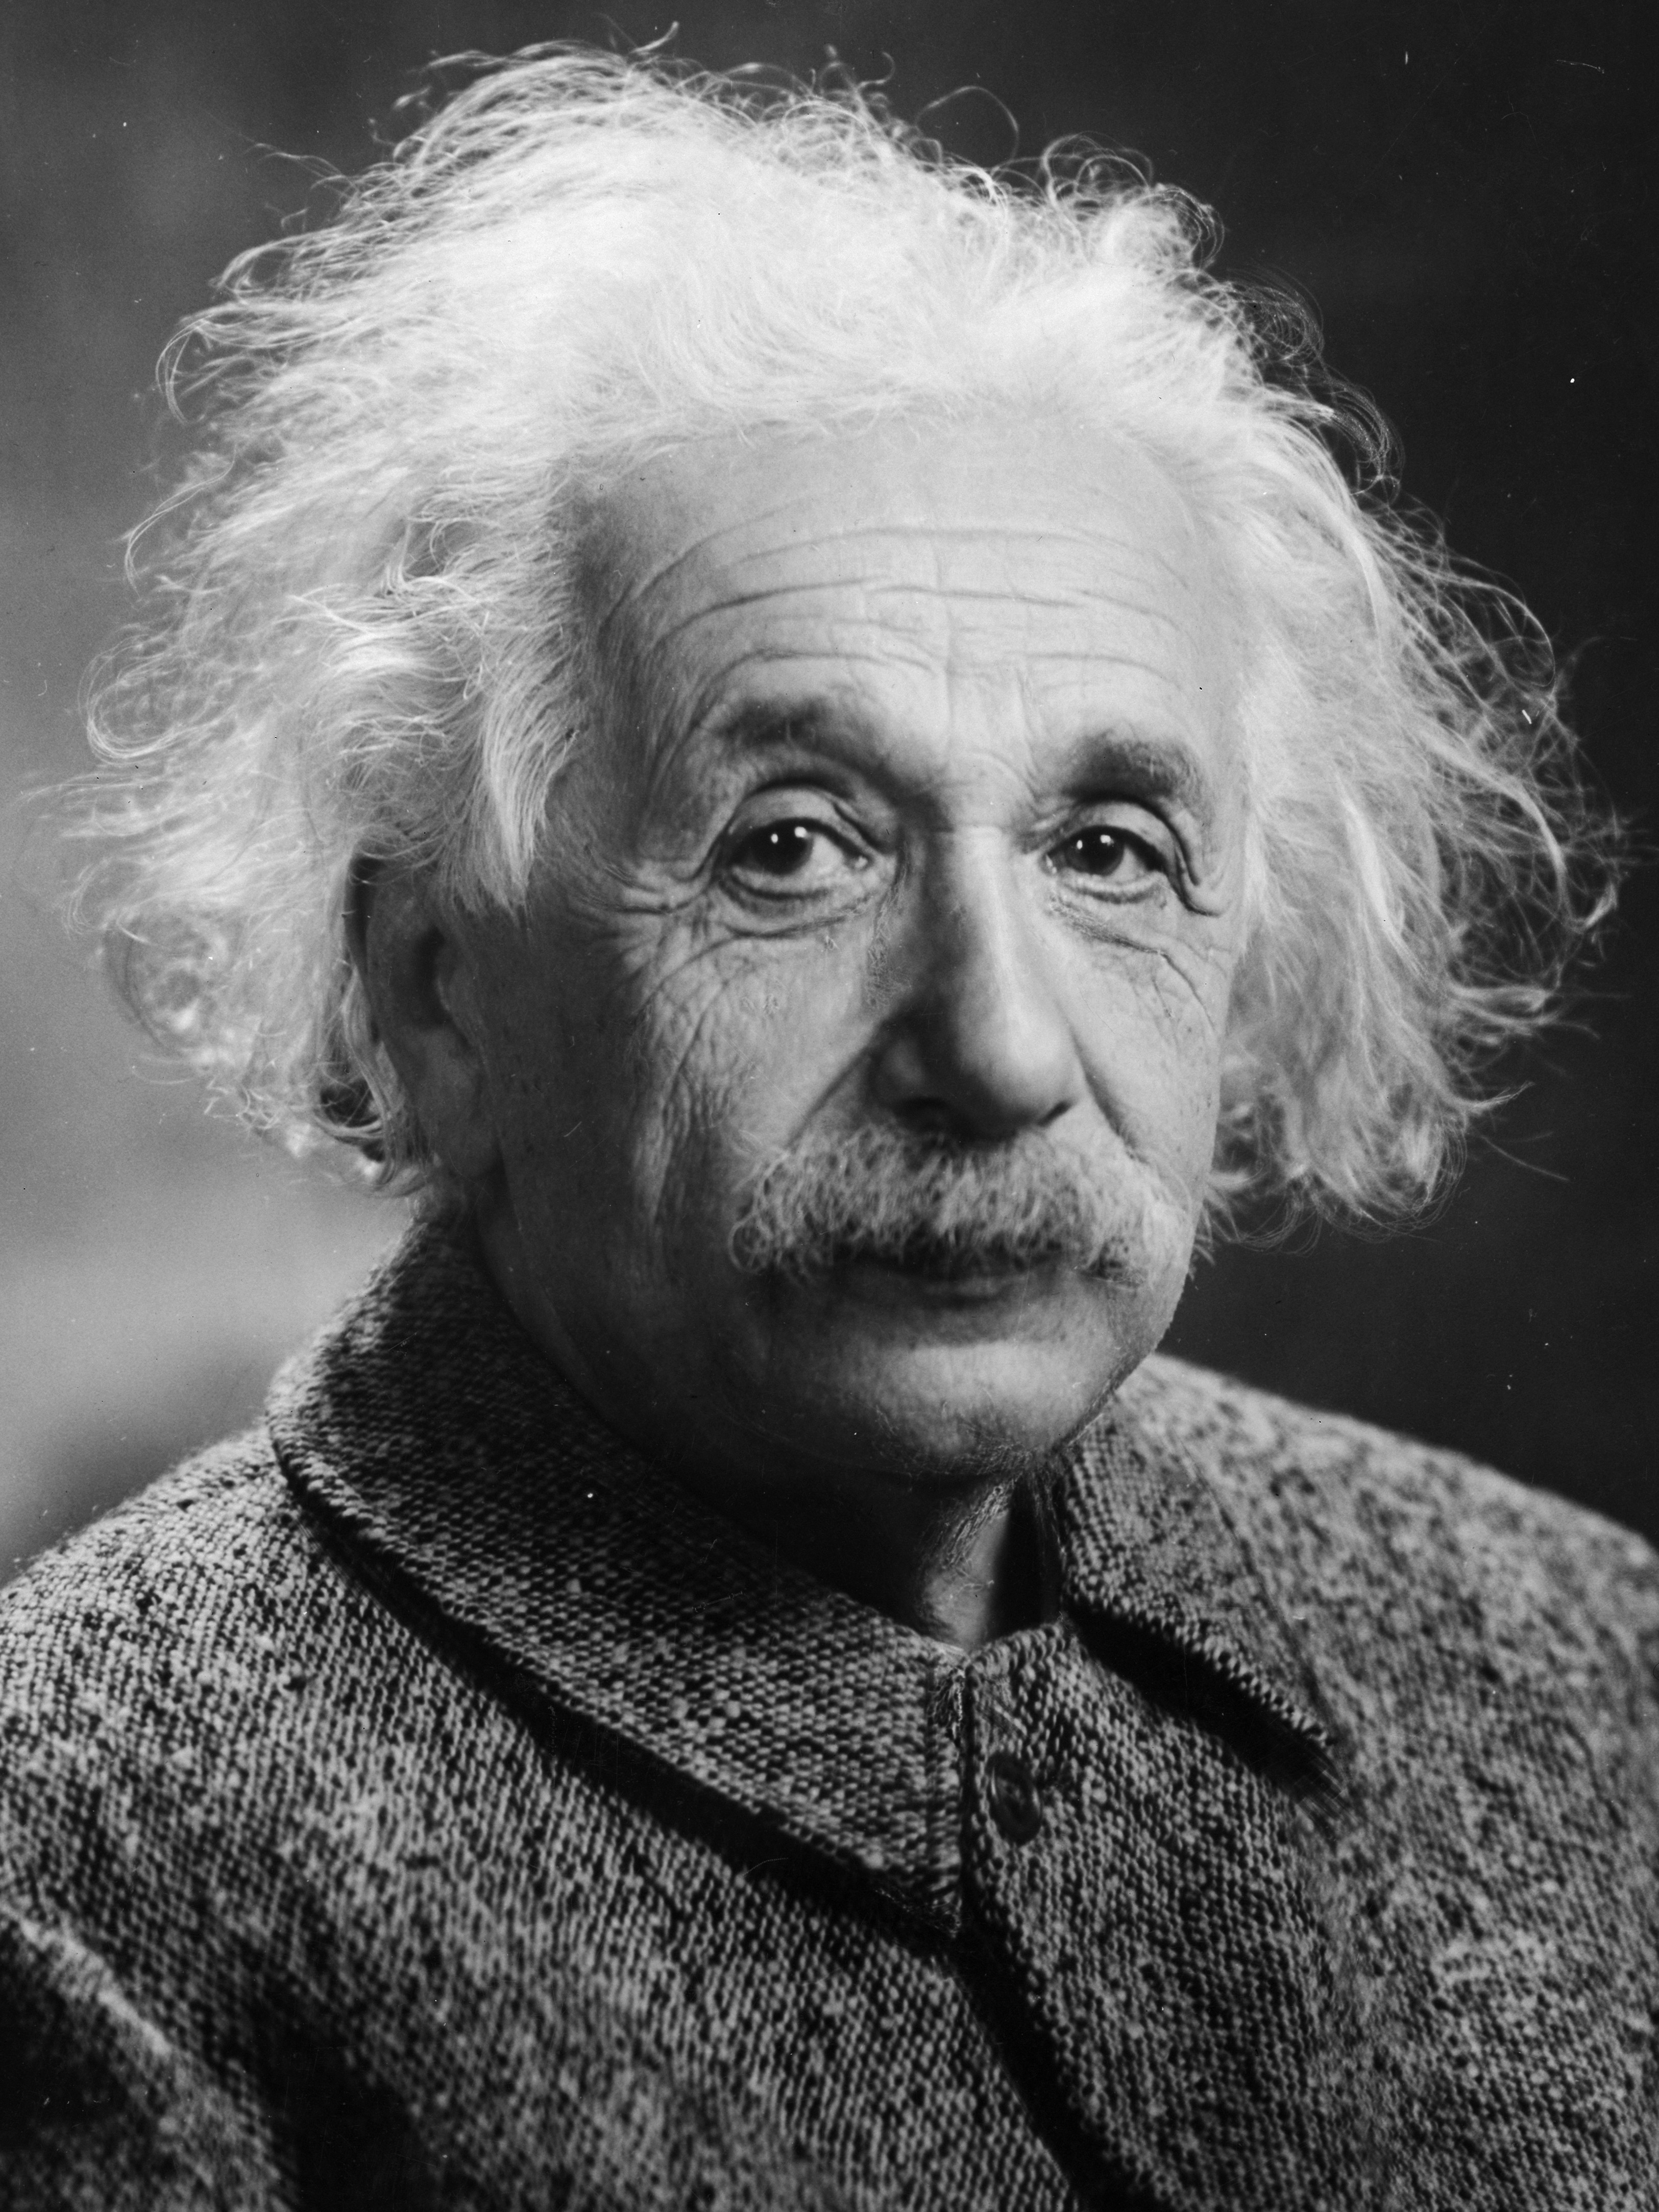 アインシュタイン博士の生涯と人物像まとめ 発明 名言 死因 Iqは History Style